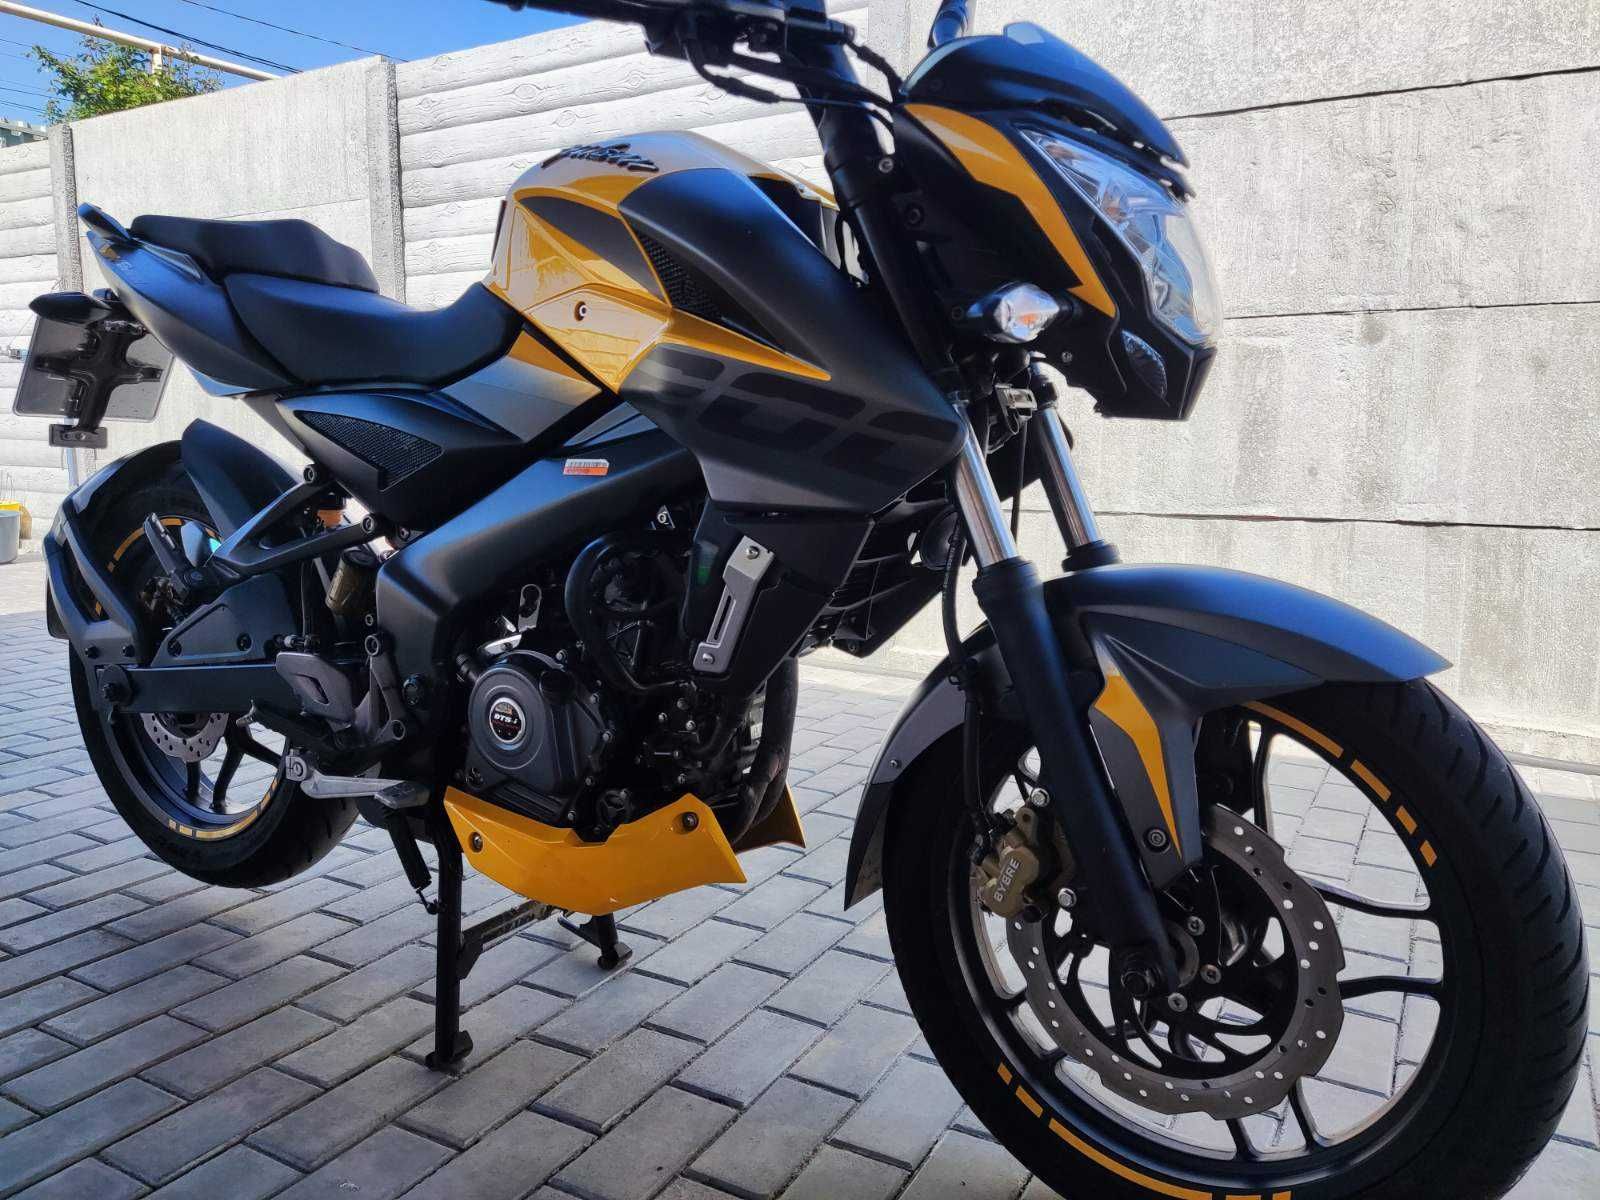 Мотоцикл Bajaj Pulsar NS200, 2020р.